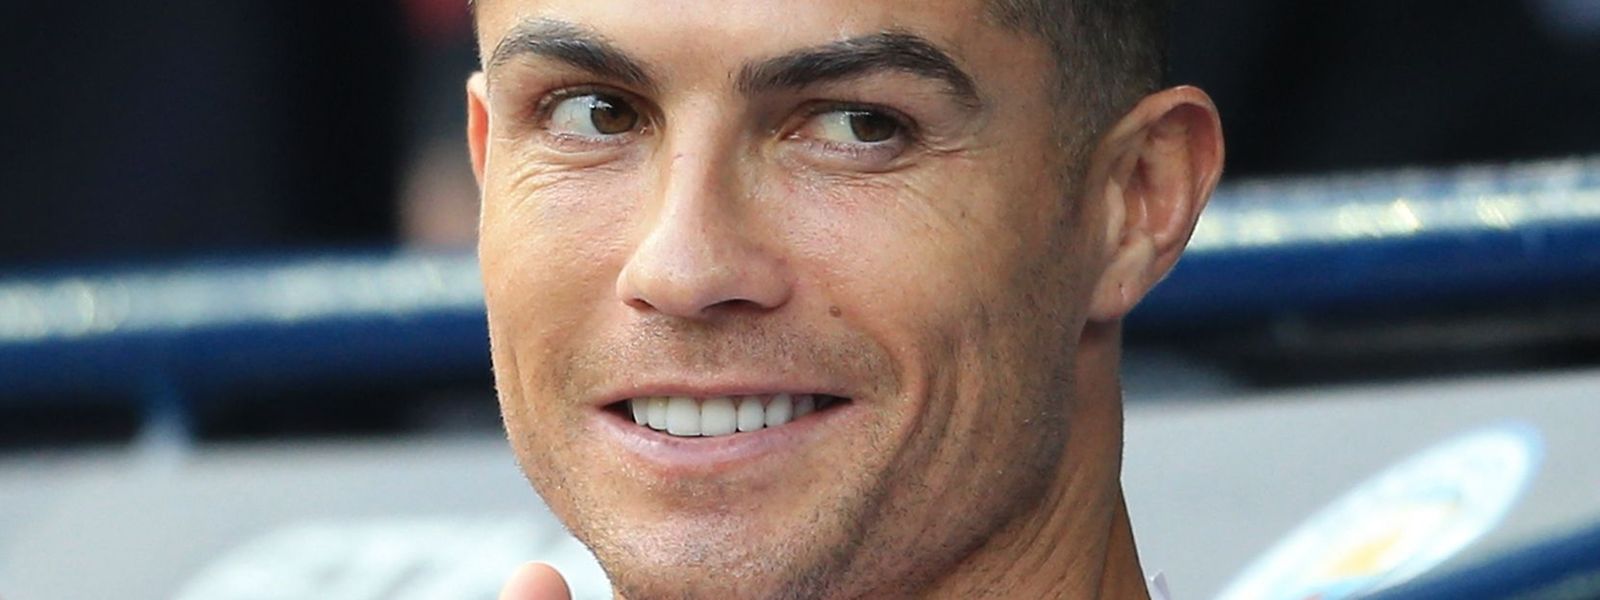 A RTP transmite esta quinta-feira a primeira parte da polémica entrevista do jornalista britânico a Cristiano Ronaldo.